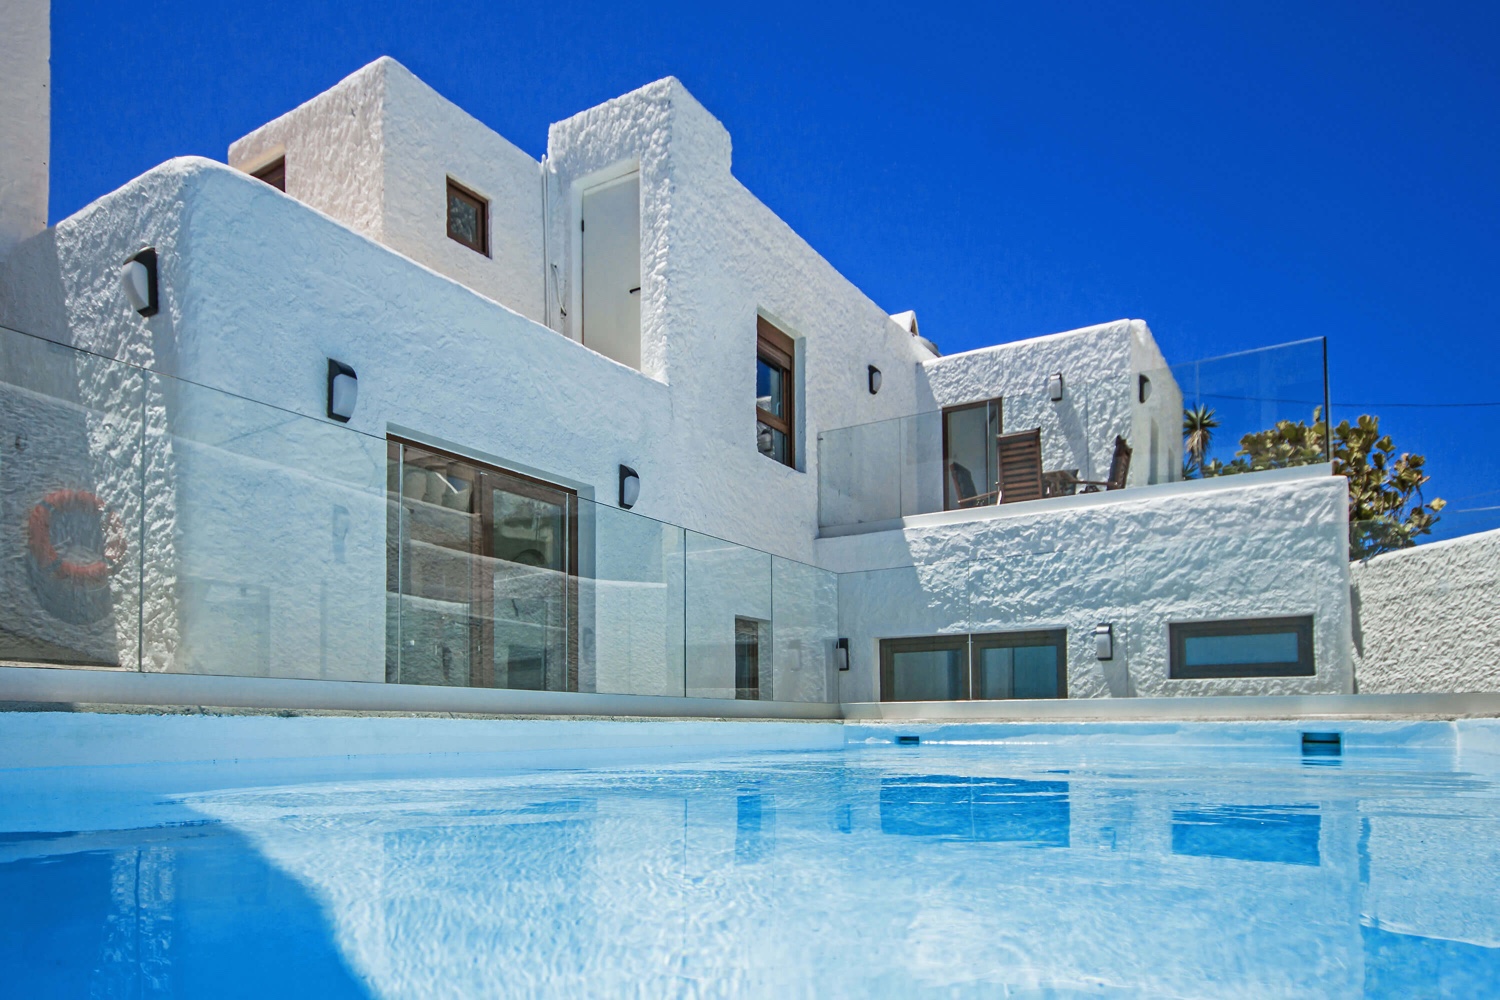 Gezellig huis in Canarische stijl, smaakvol ingericht, met een privézwembad en zeer dicht bij de zee.